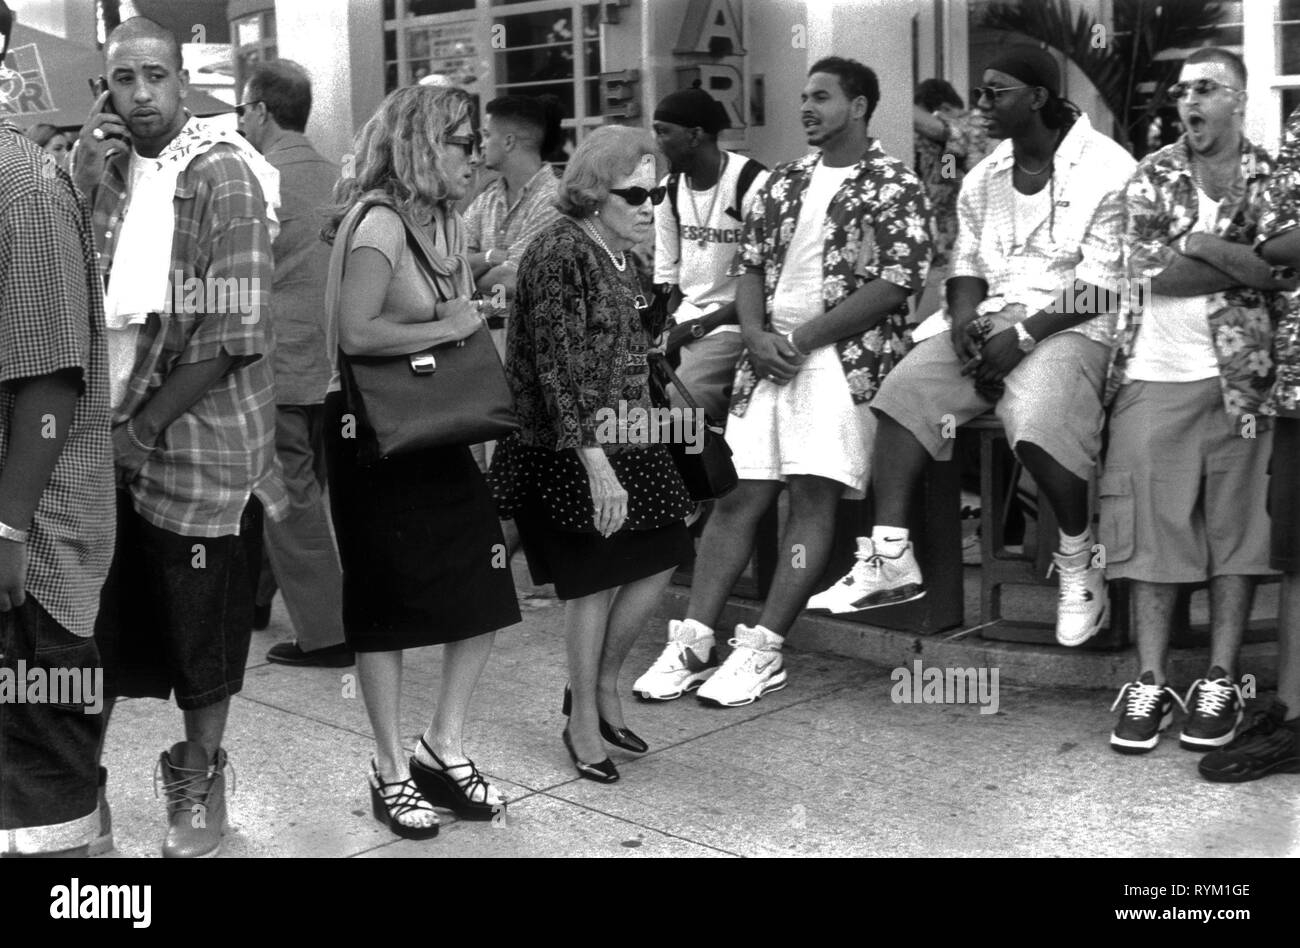 South Beach Ocean Drive Miami Florida années 1990 États-Unis. Deux hommes d'affaires stressés poussent une foule de jeunes Afro-américains qui traînaient pendant les vacances d'été. 1999 HOMER SYKES Banque D'Images